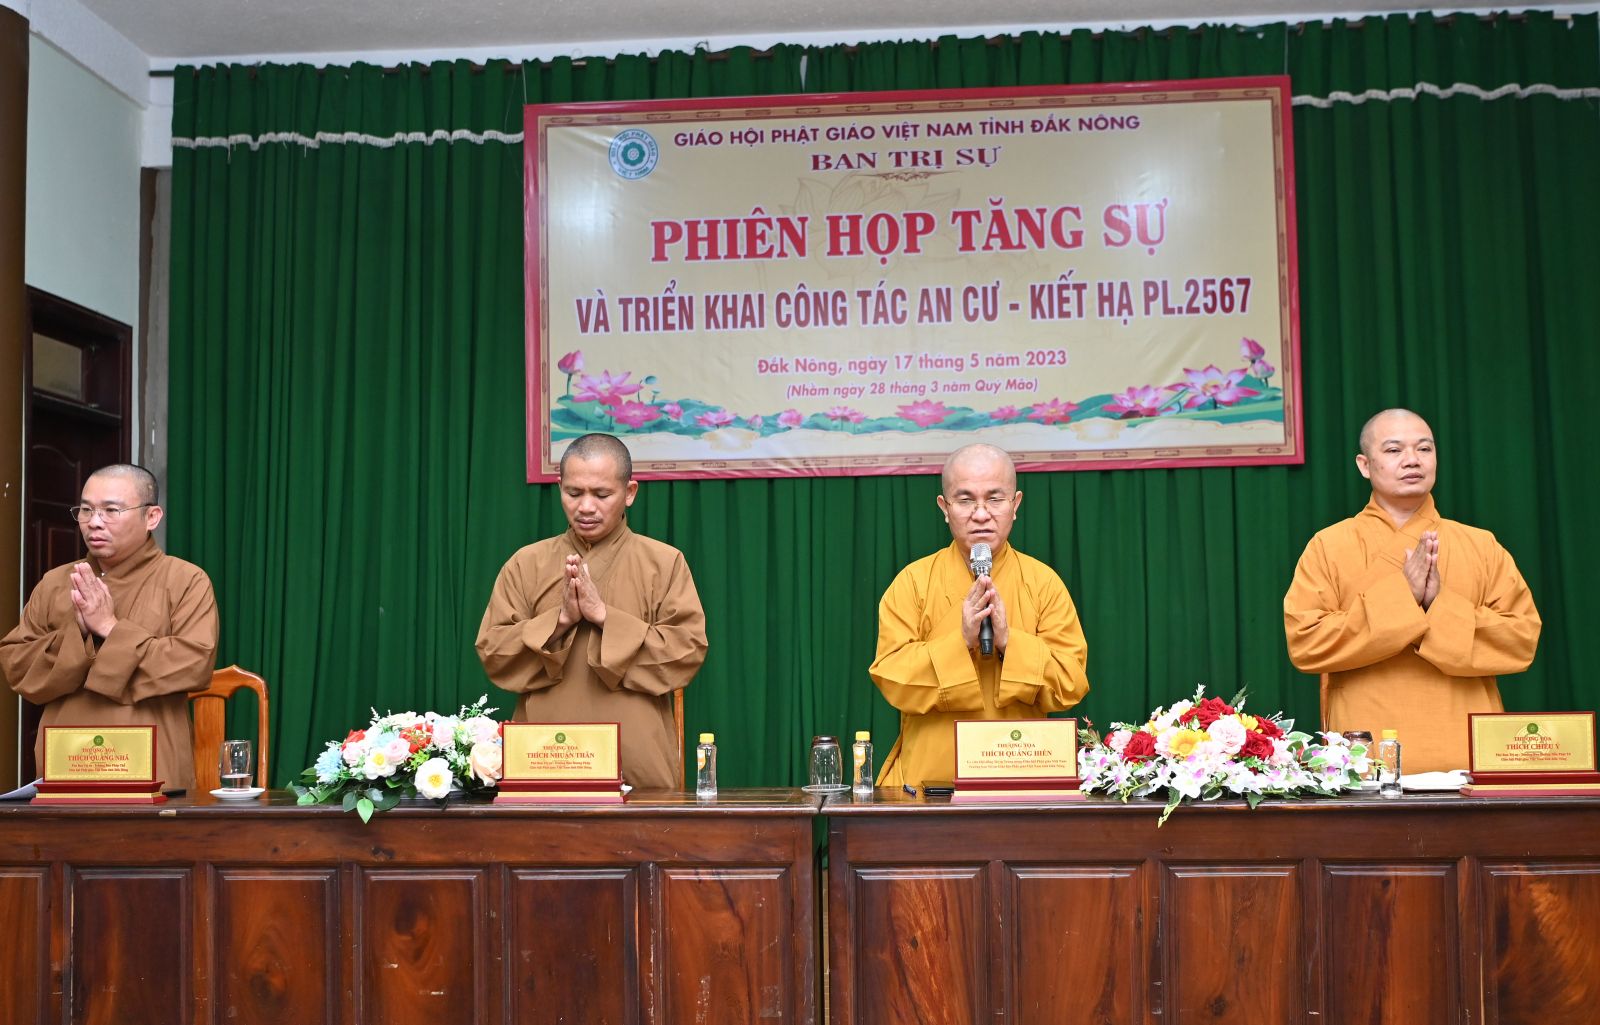 Phiên họp triển khai công tác Phật đản và An cư Kiết hạ PL.2567, Tăng sự cho toàn thể Tăng Ni trên toàn tỉnh